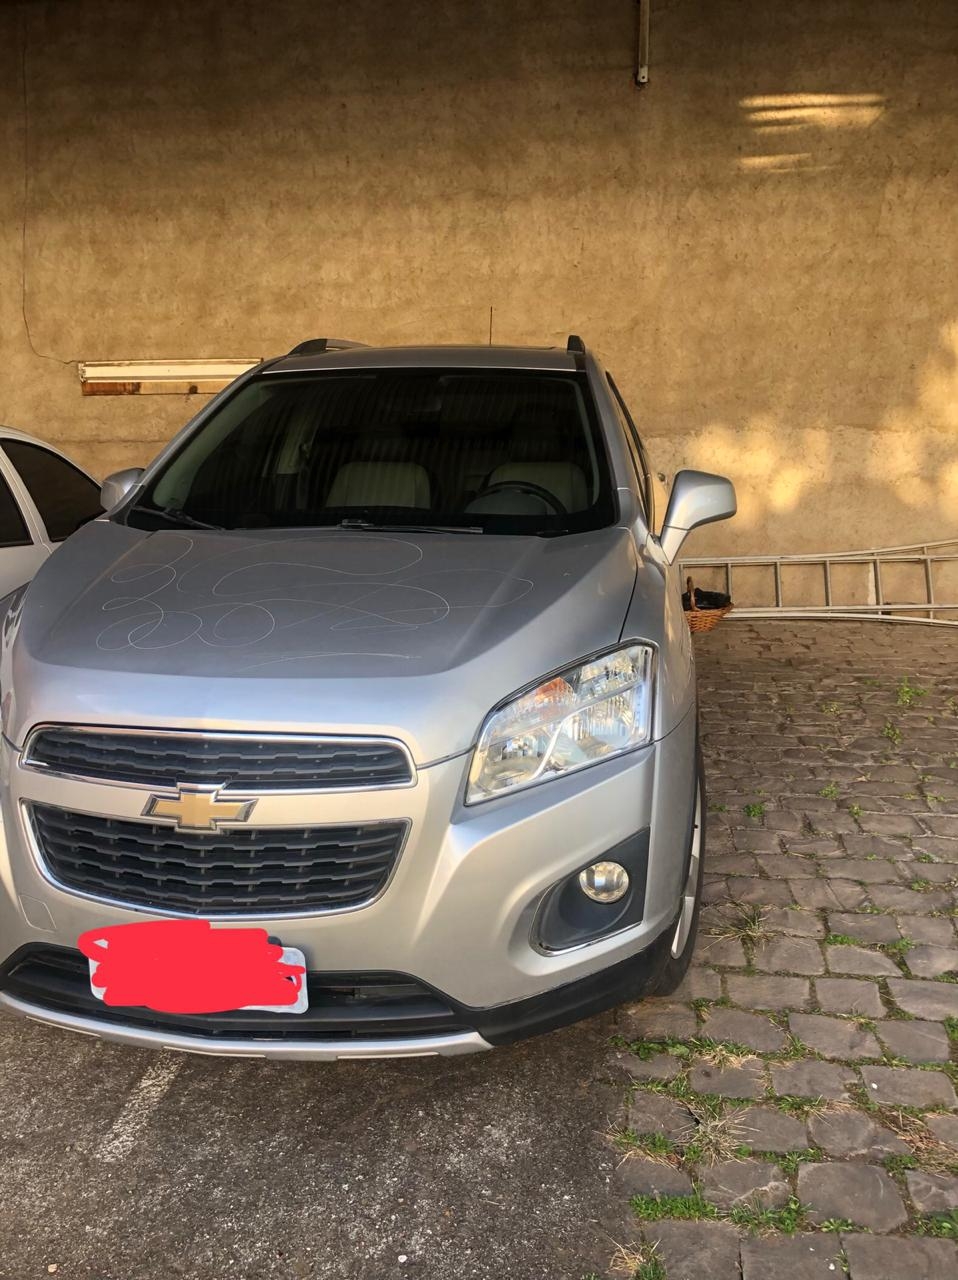 Veículo clonado havia sido roubado emPorto Alegre. - Polícia Civil Divulgação